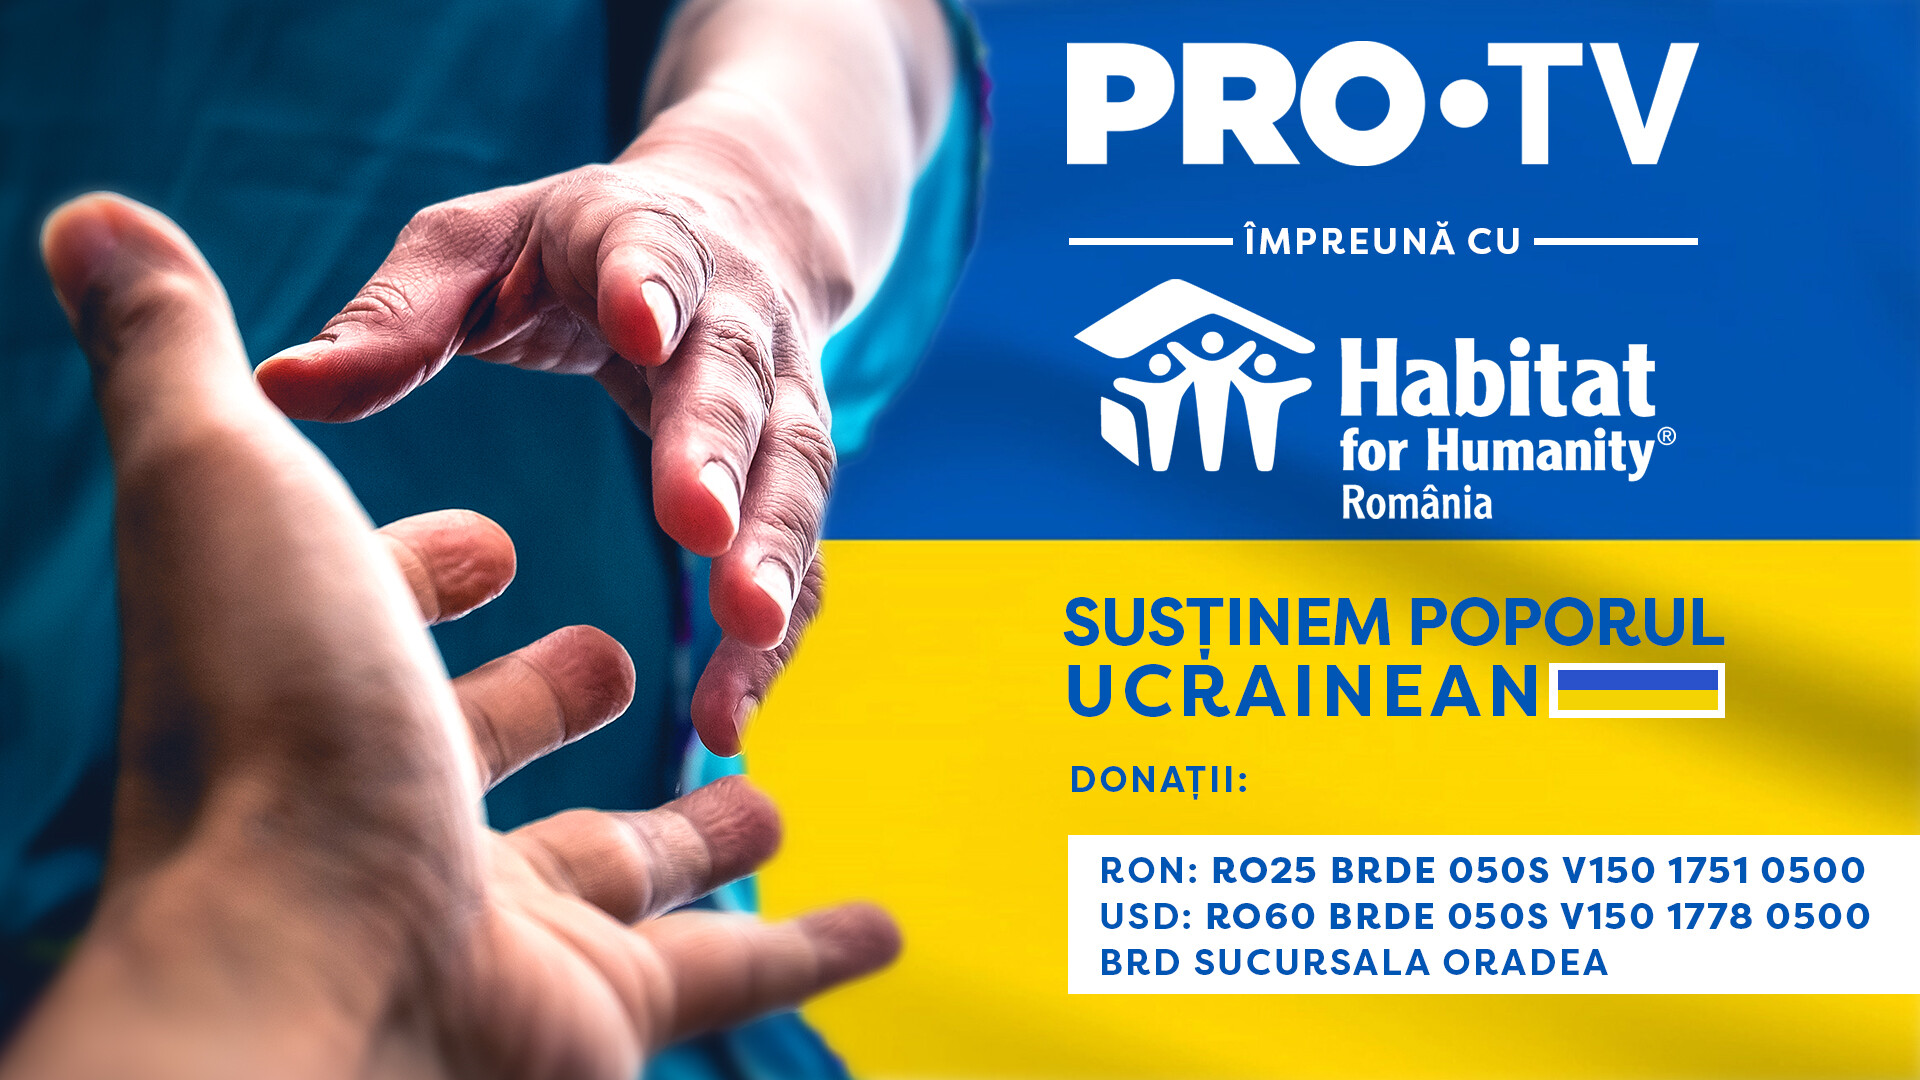 PRO TV și Habitat for Humanity susțin poporul ucrainean.